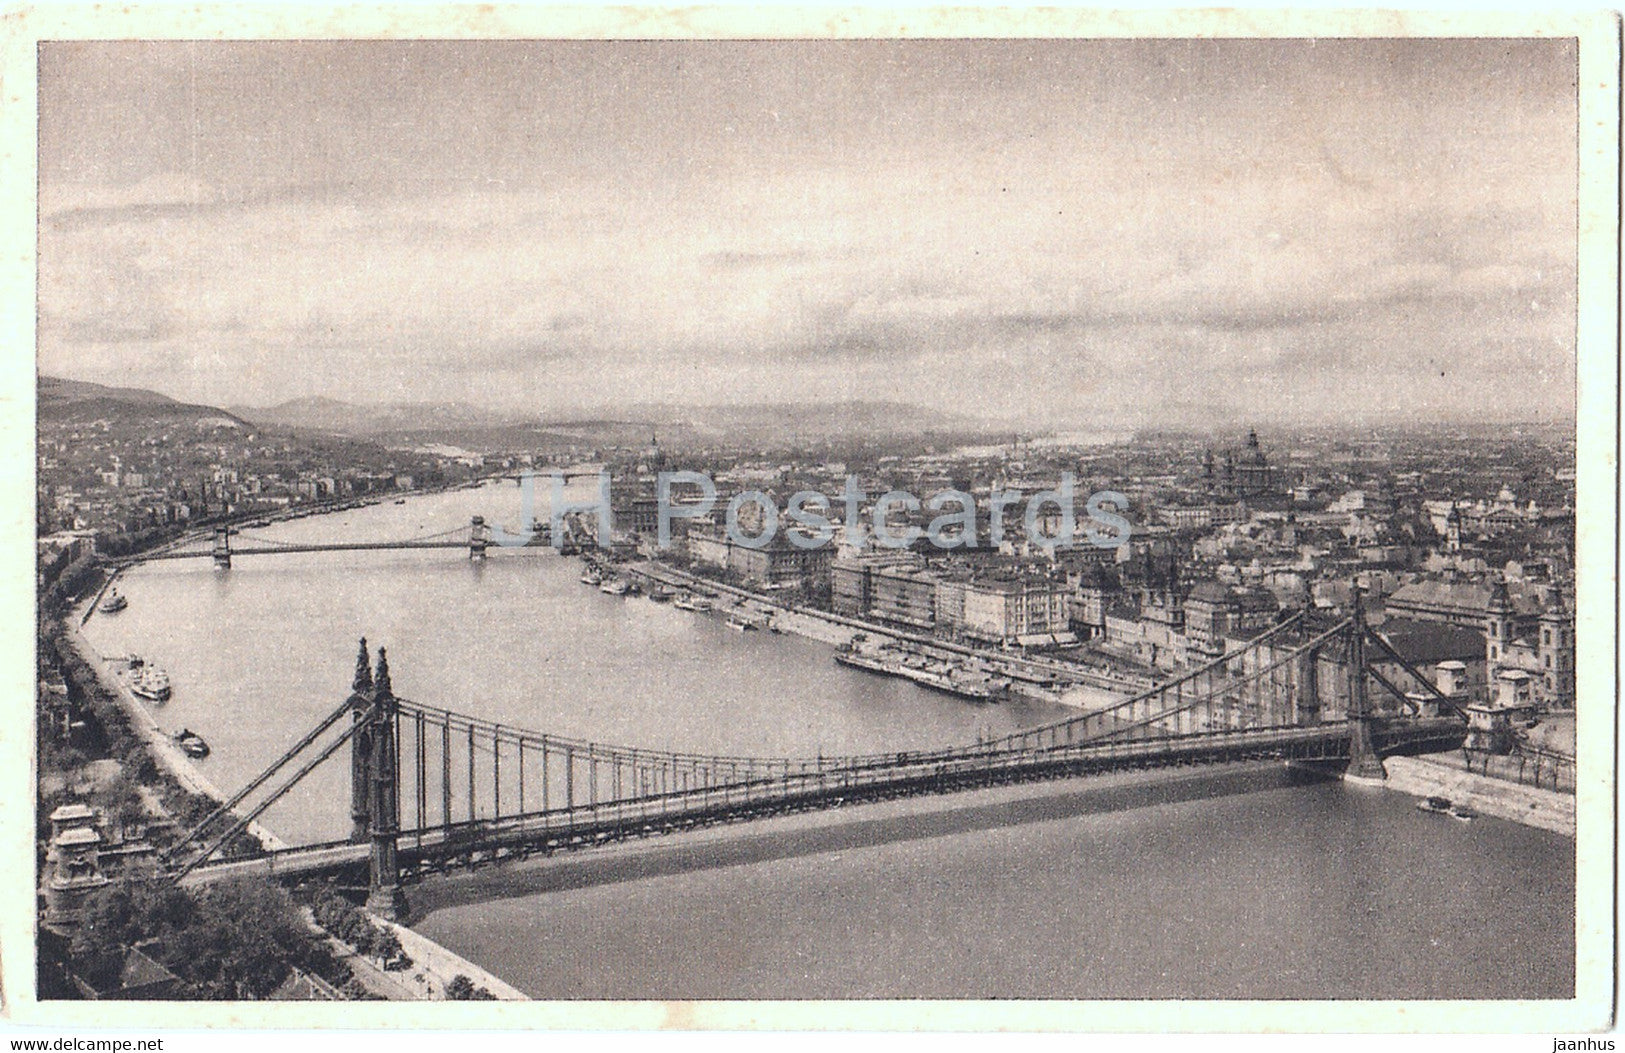 Budapest - Dunai Latkep - bridge - 43 - old postcard - Hungary - unused - JH Postcards